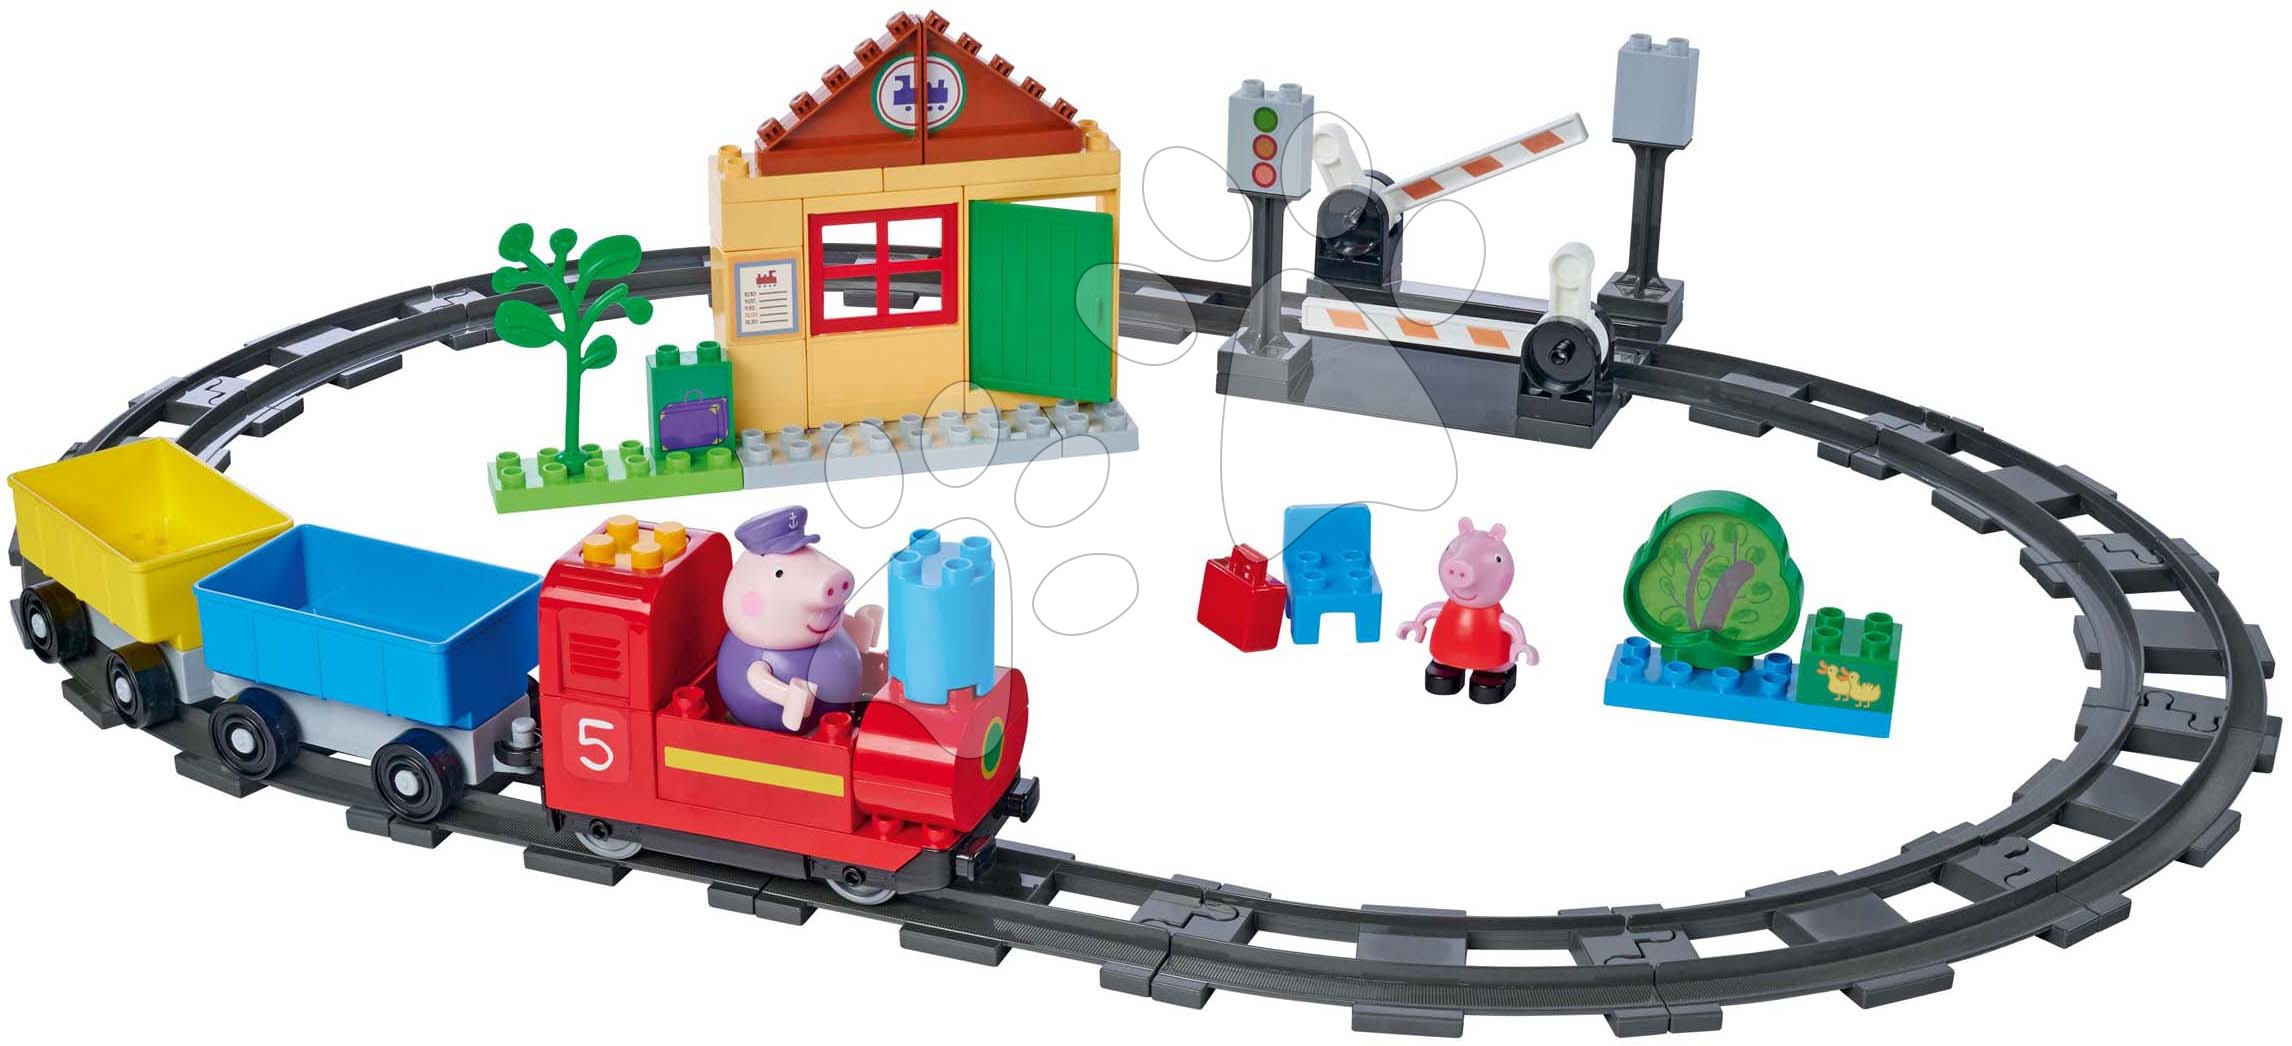 Építőjáték elektronikus Peppa Pig Train Fun PlayBig Bloxx Big vasút hanggal és 2 figurával 55 darab 1,5-5 évesnek